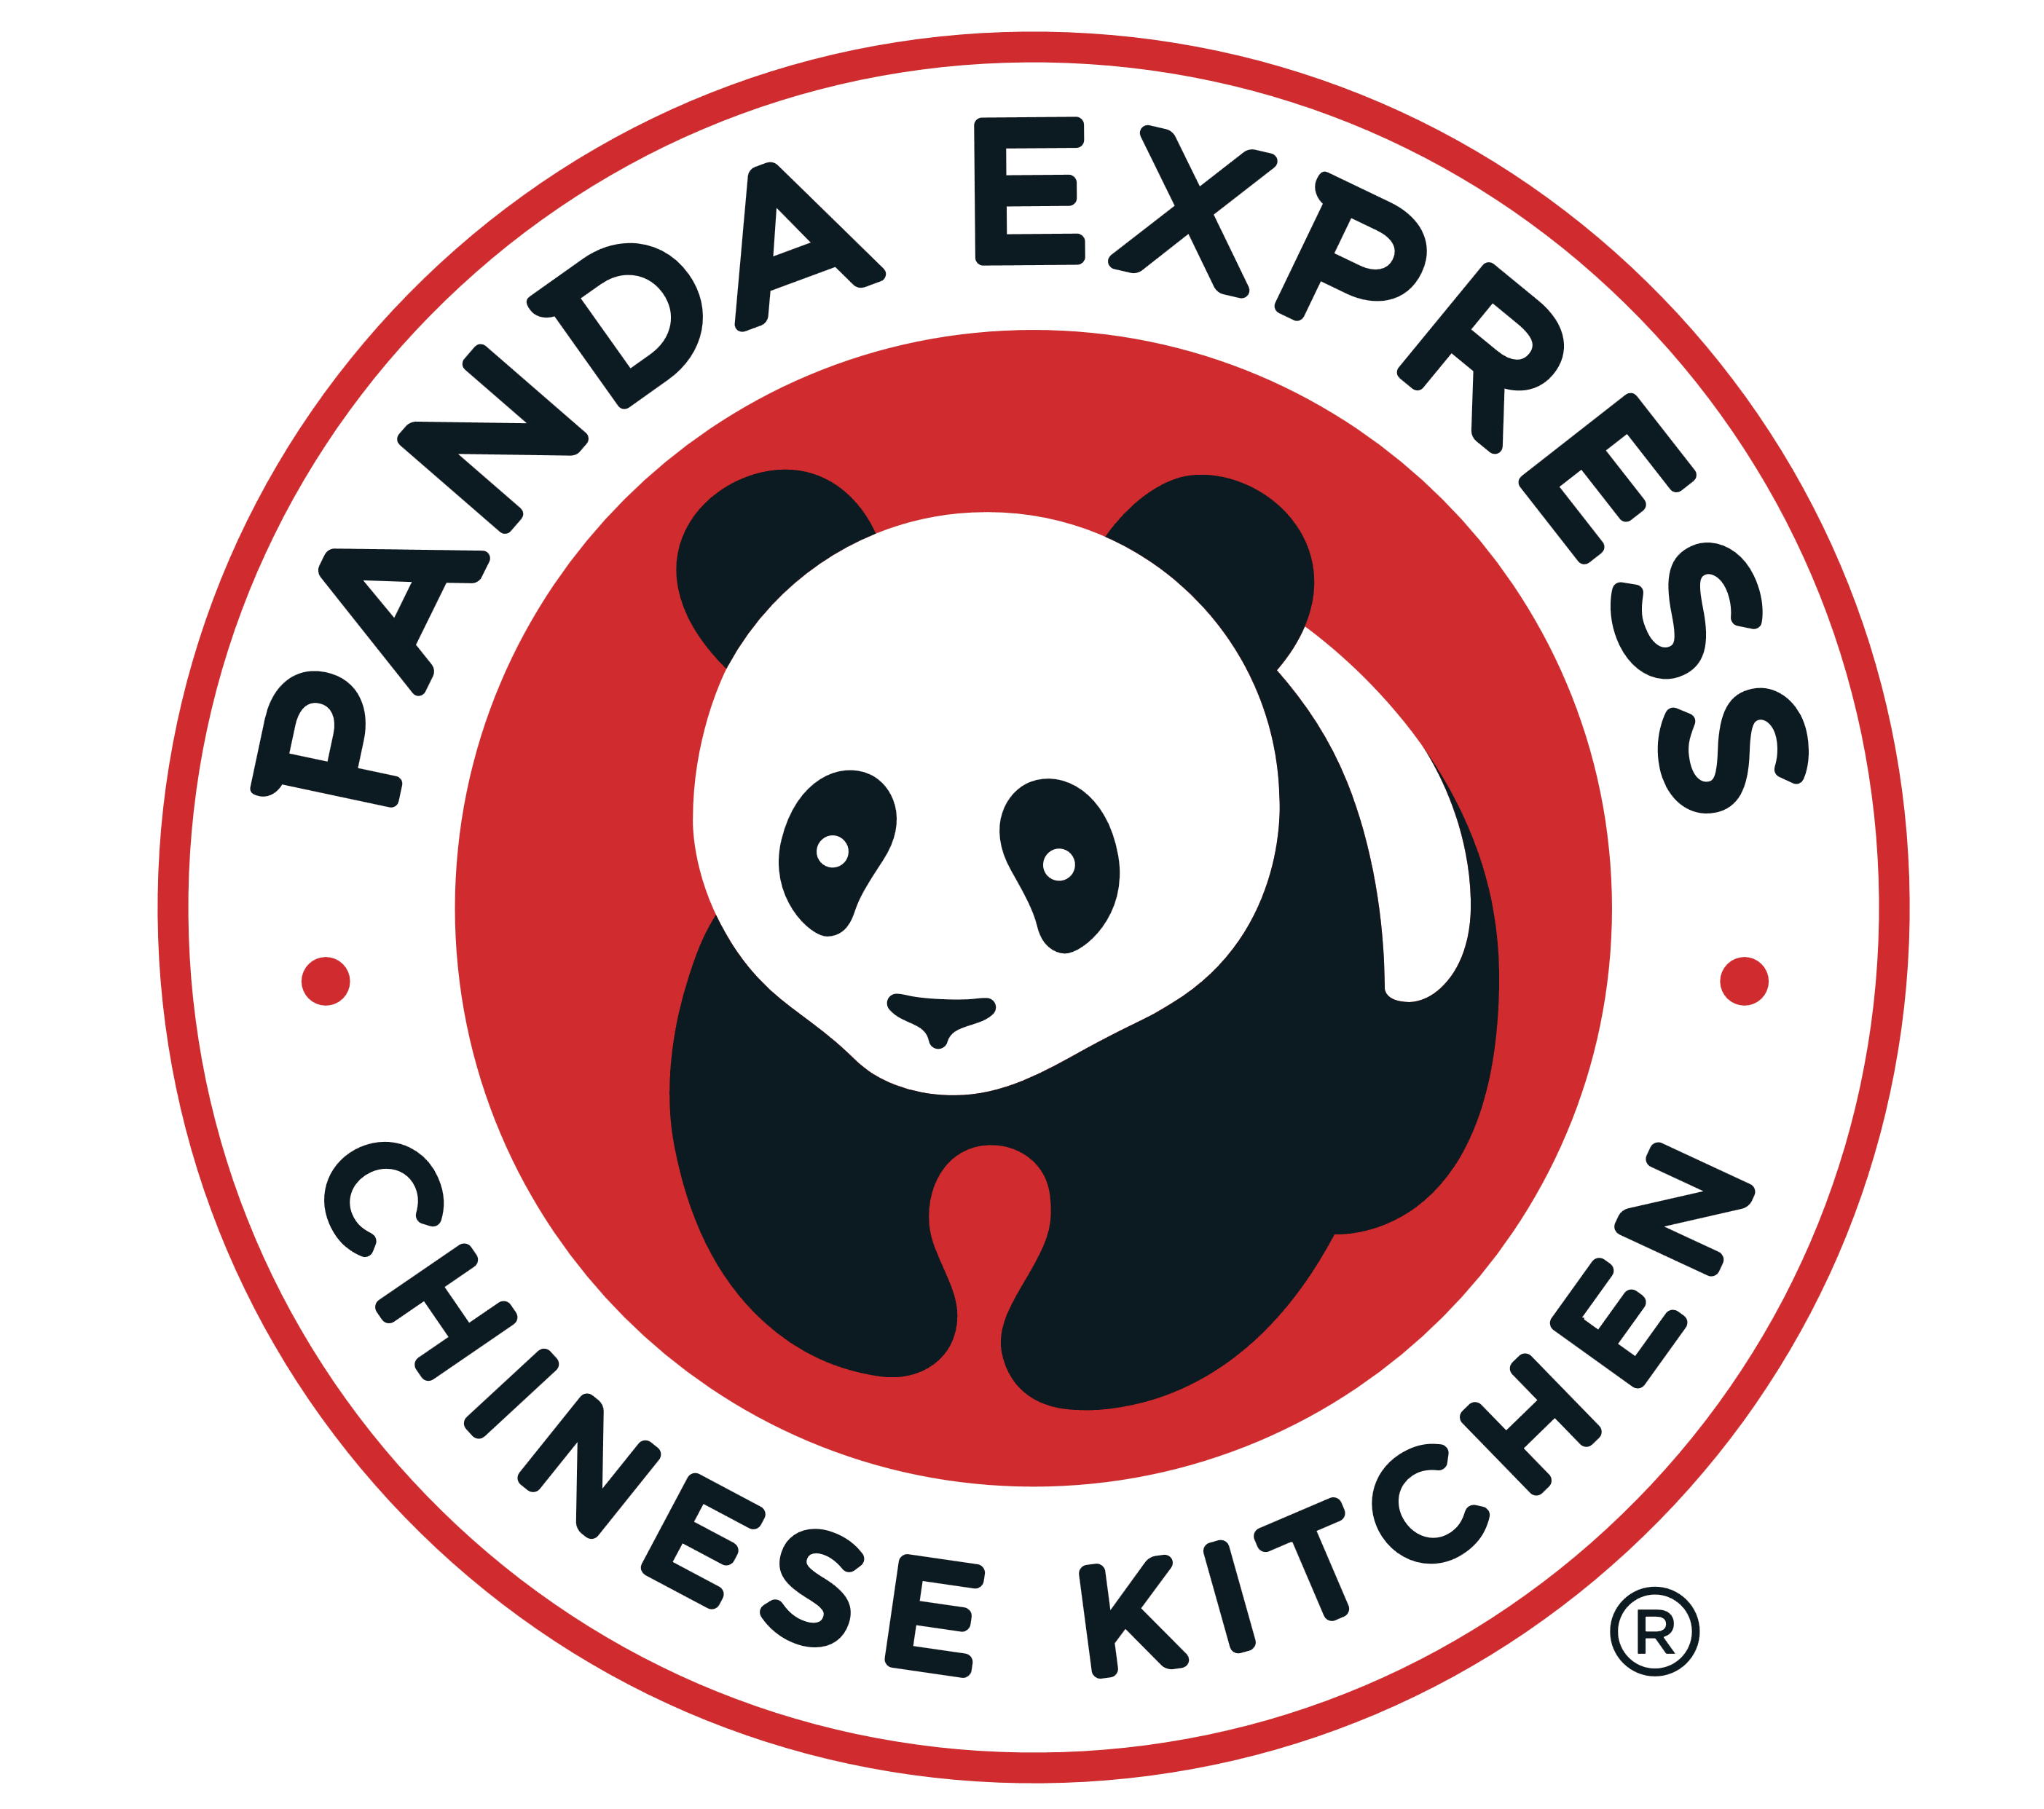 Panda Express logo, logotype